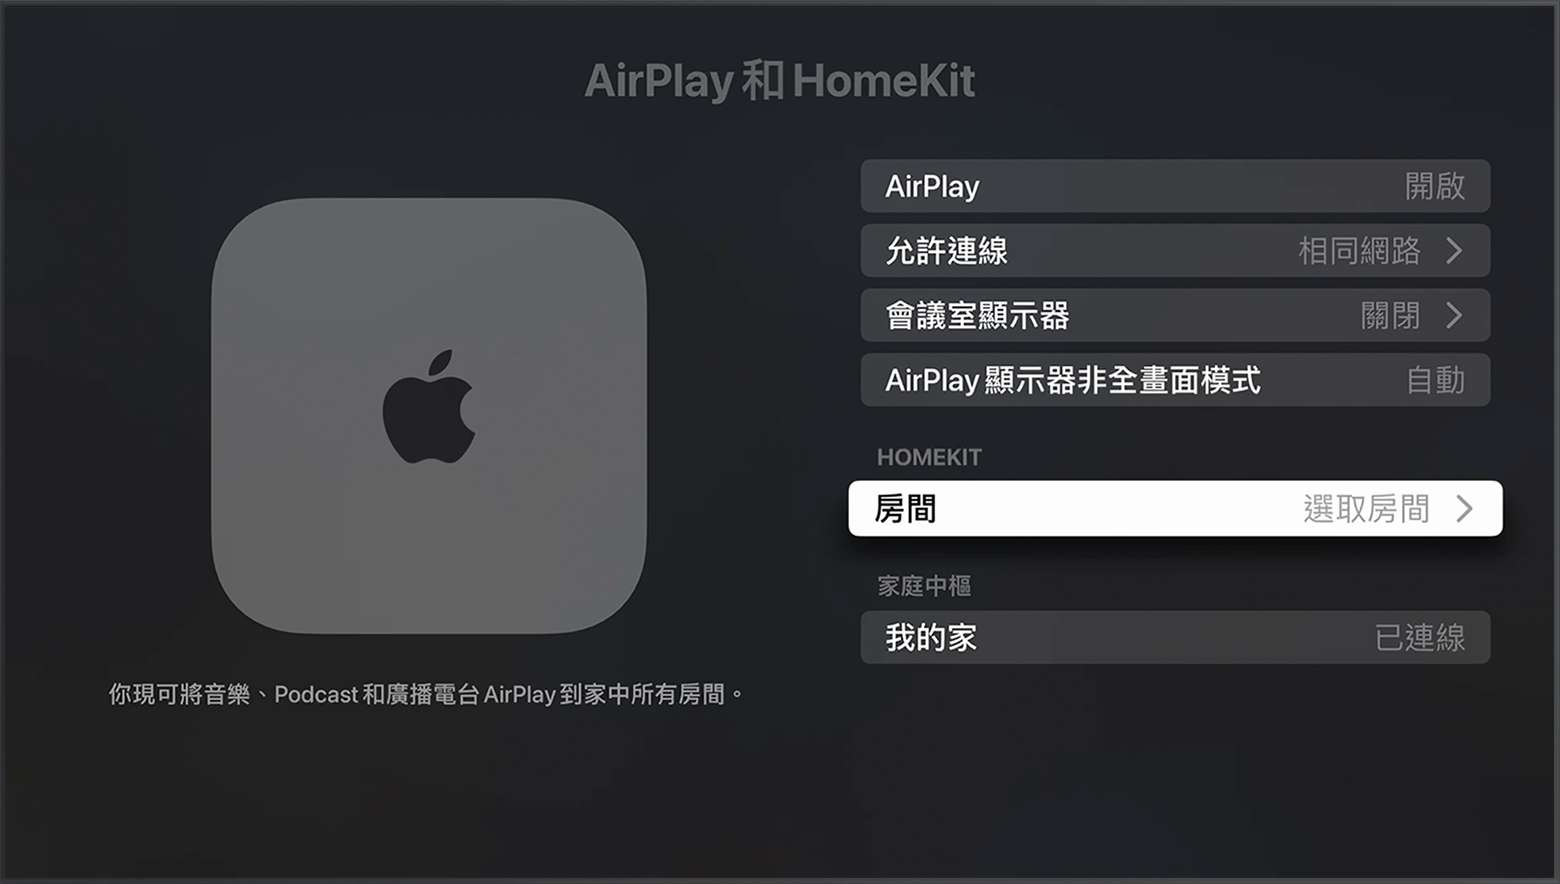 「房間」會出現在 Apple TV 設定中「AirPlay 和 HomeKit」畫面的「HomeKit」下方